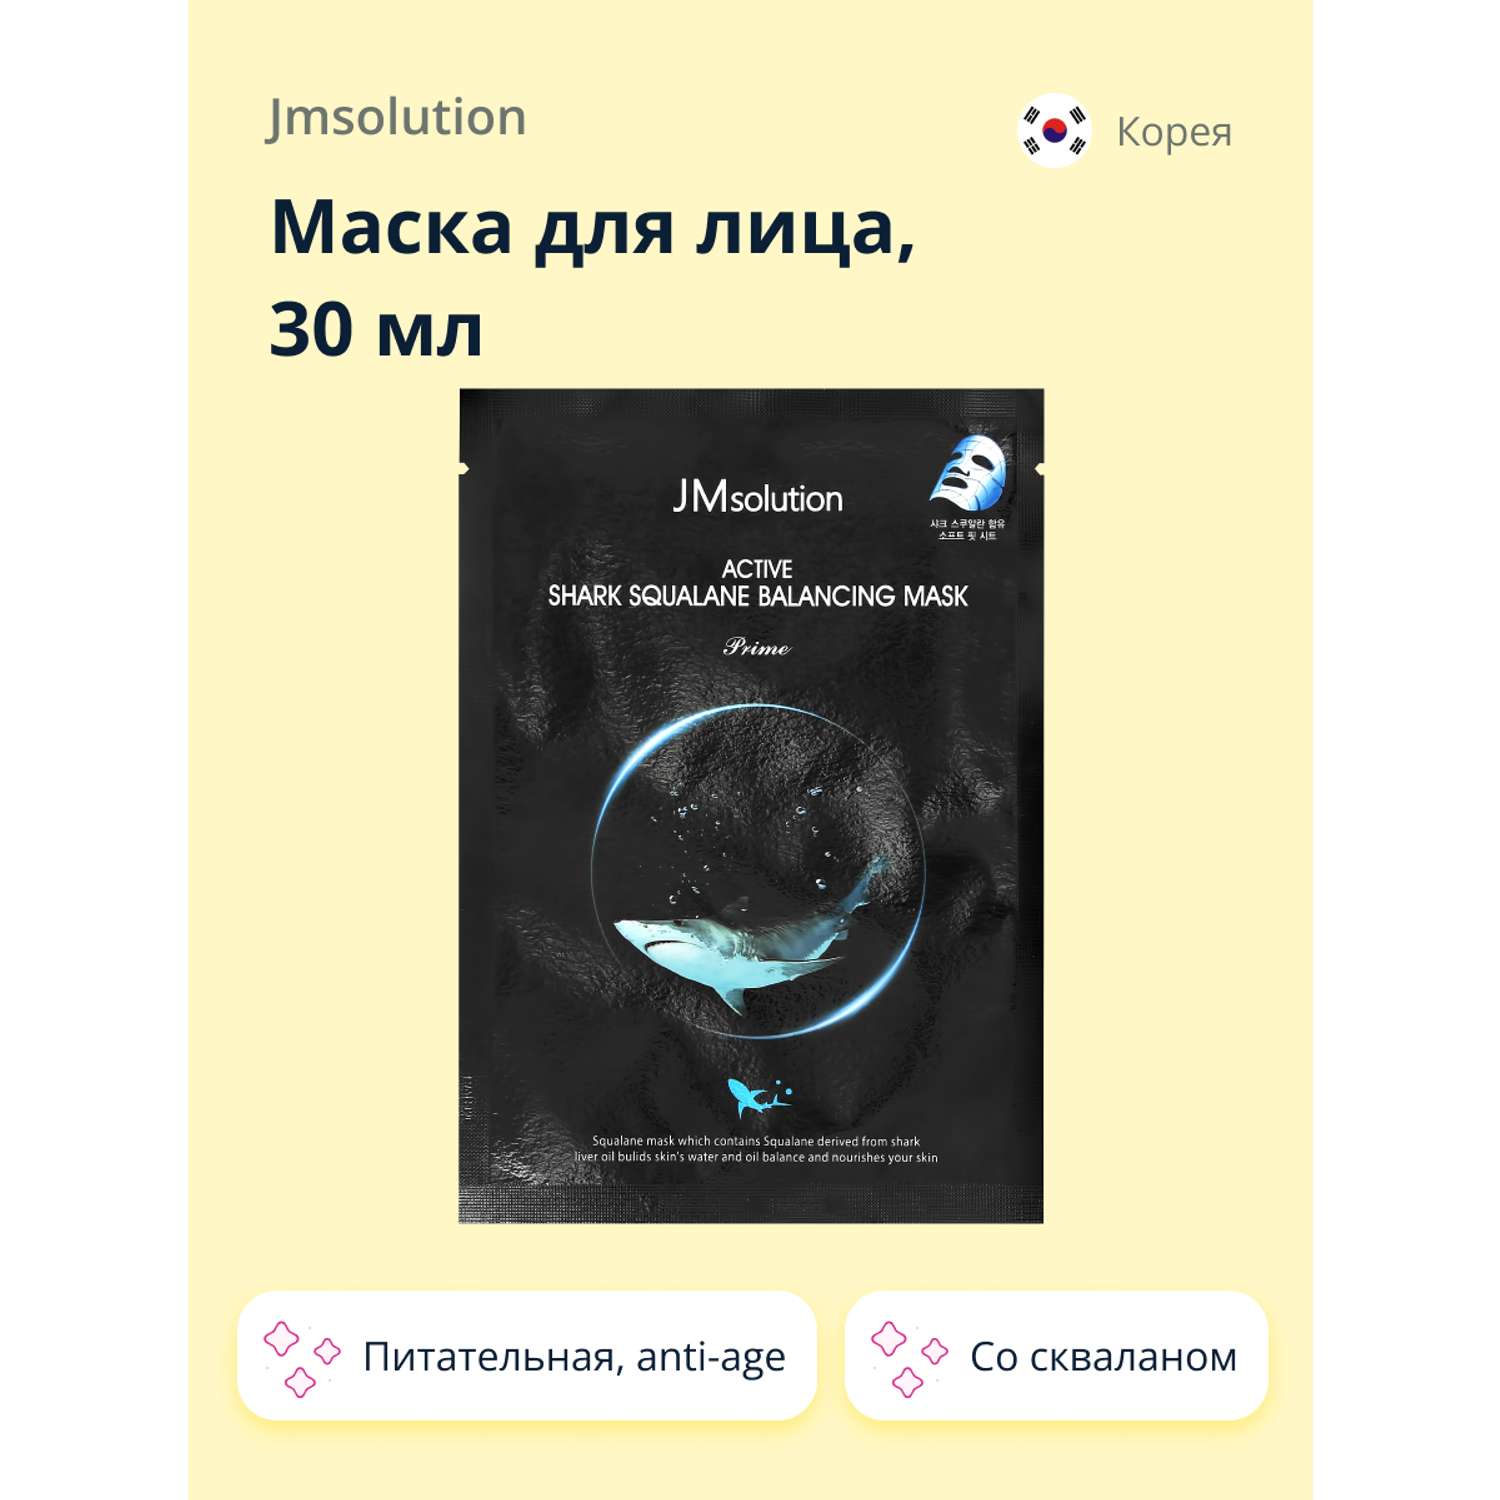 Маска тканевая JMsolution со скваланом питательная и anti-age 30 мл - фото 1